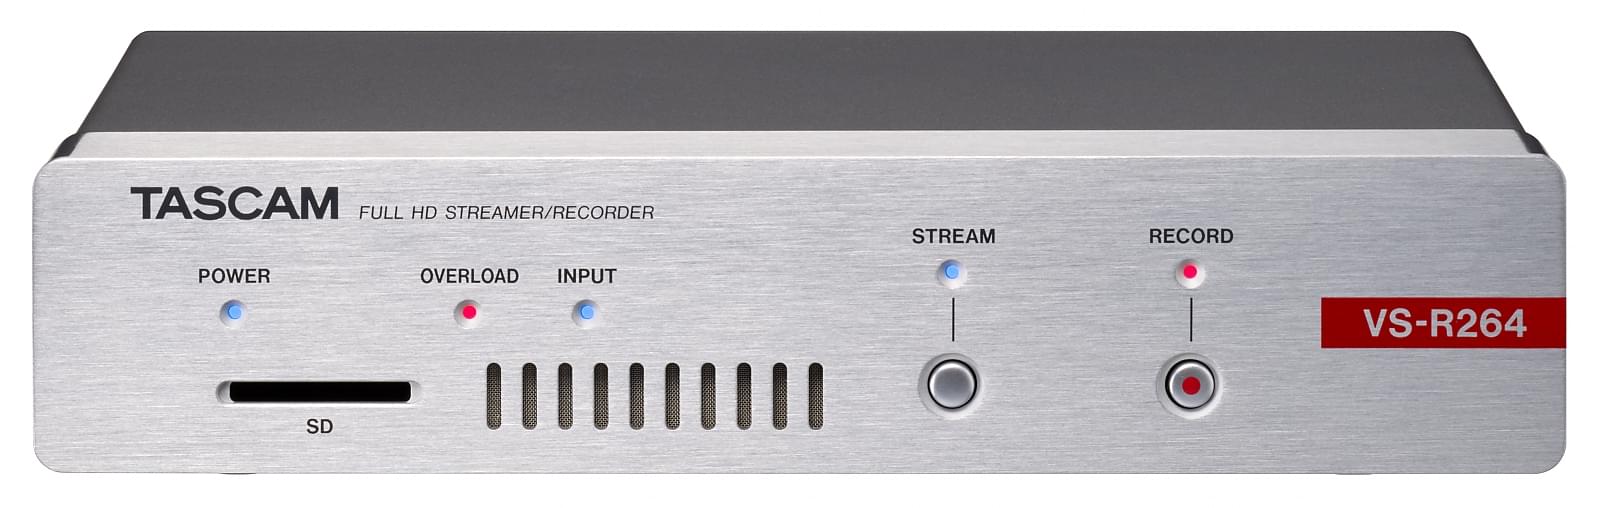 Full HD Live Streaming Hardware Encoder/Decoder | Tascam VS-R264